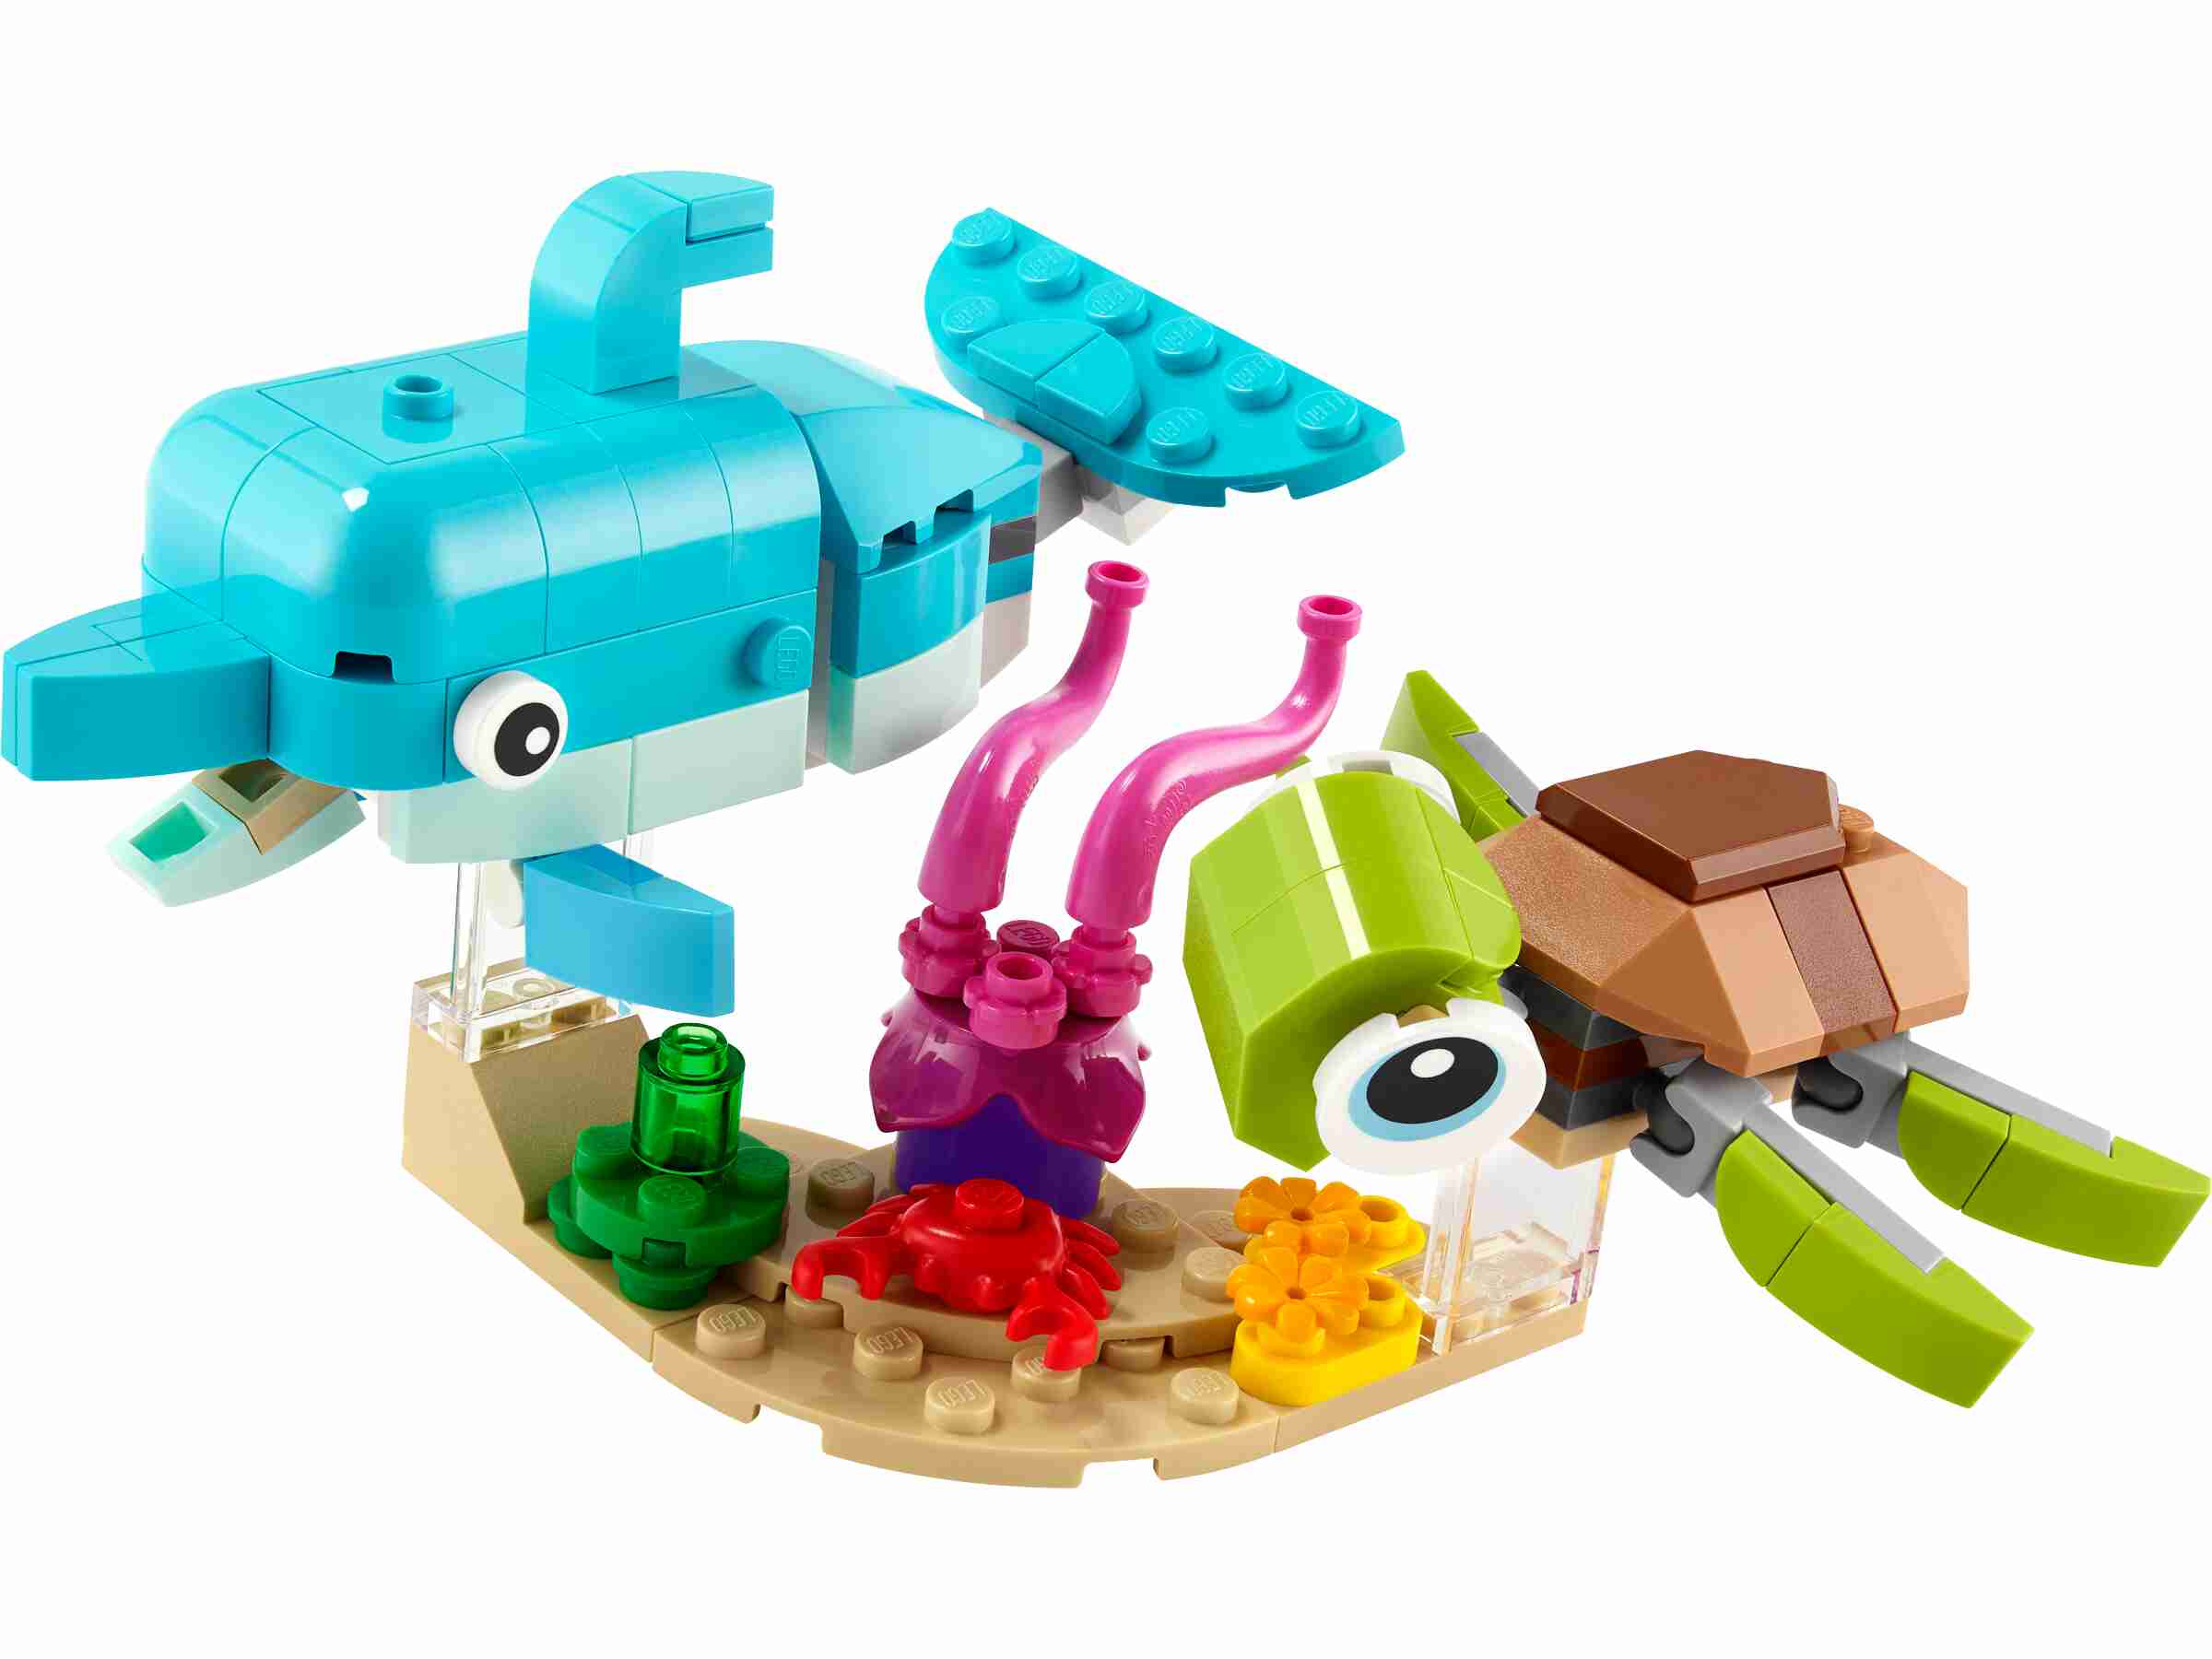 LEGO 31128 Creator 3-in-1 Delfin und Schildkröte, Seepferdchen oder Fisch